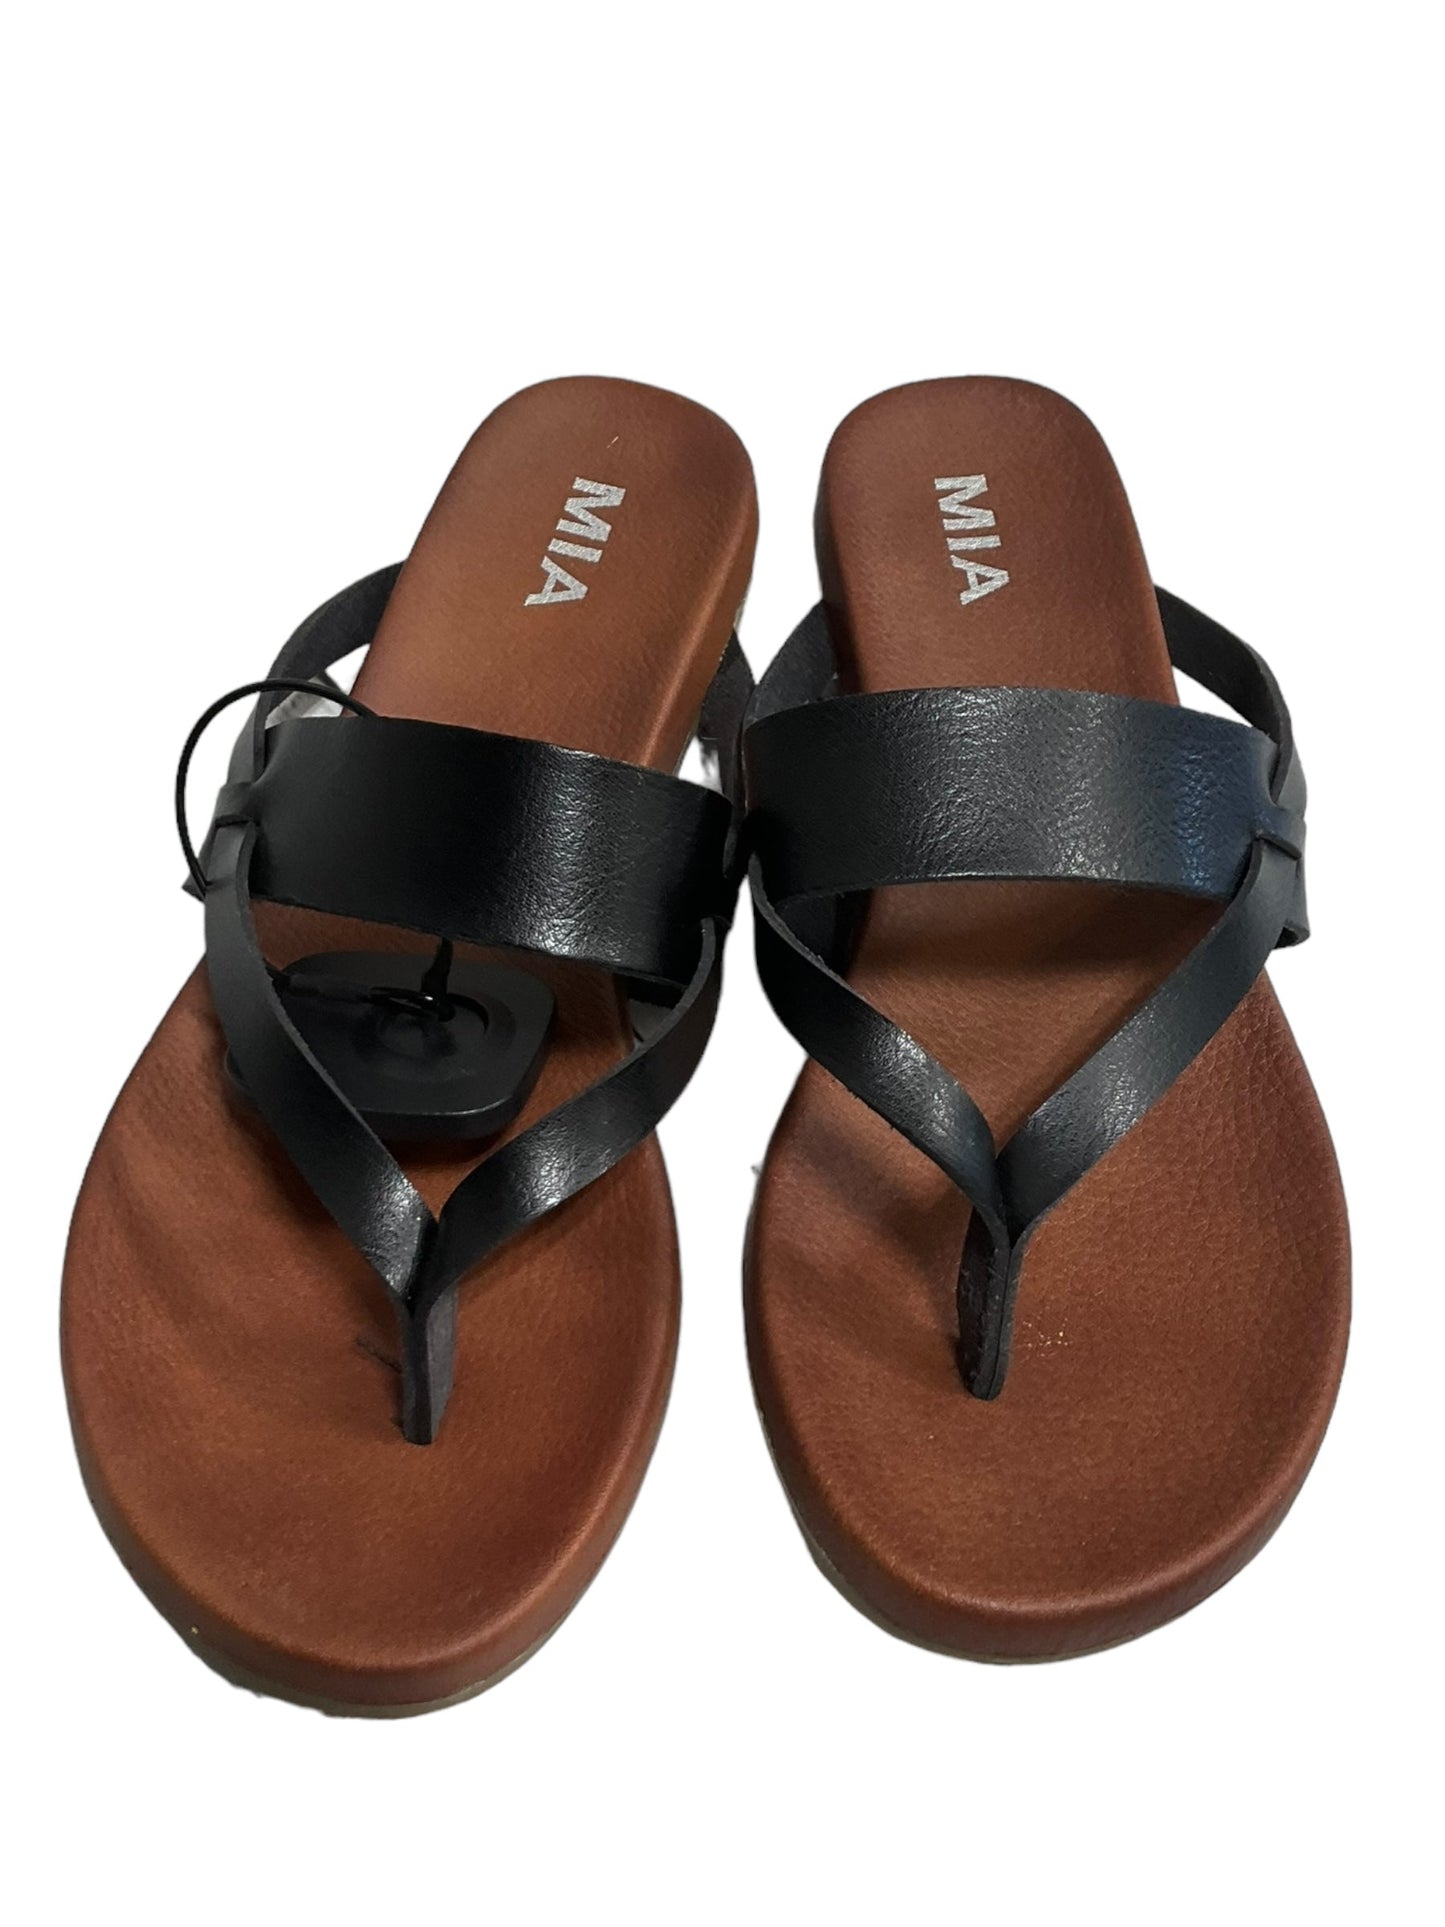 Black Sandals Flip Flops Mia, Size 8